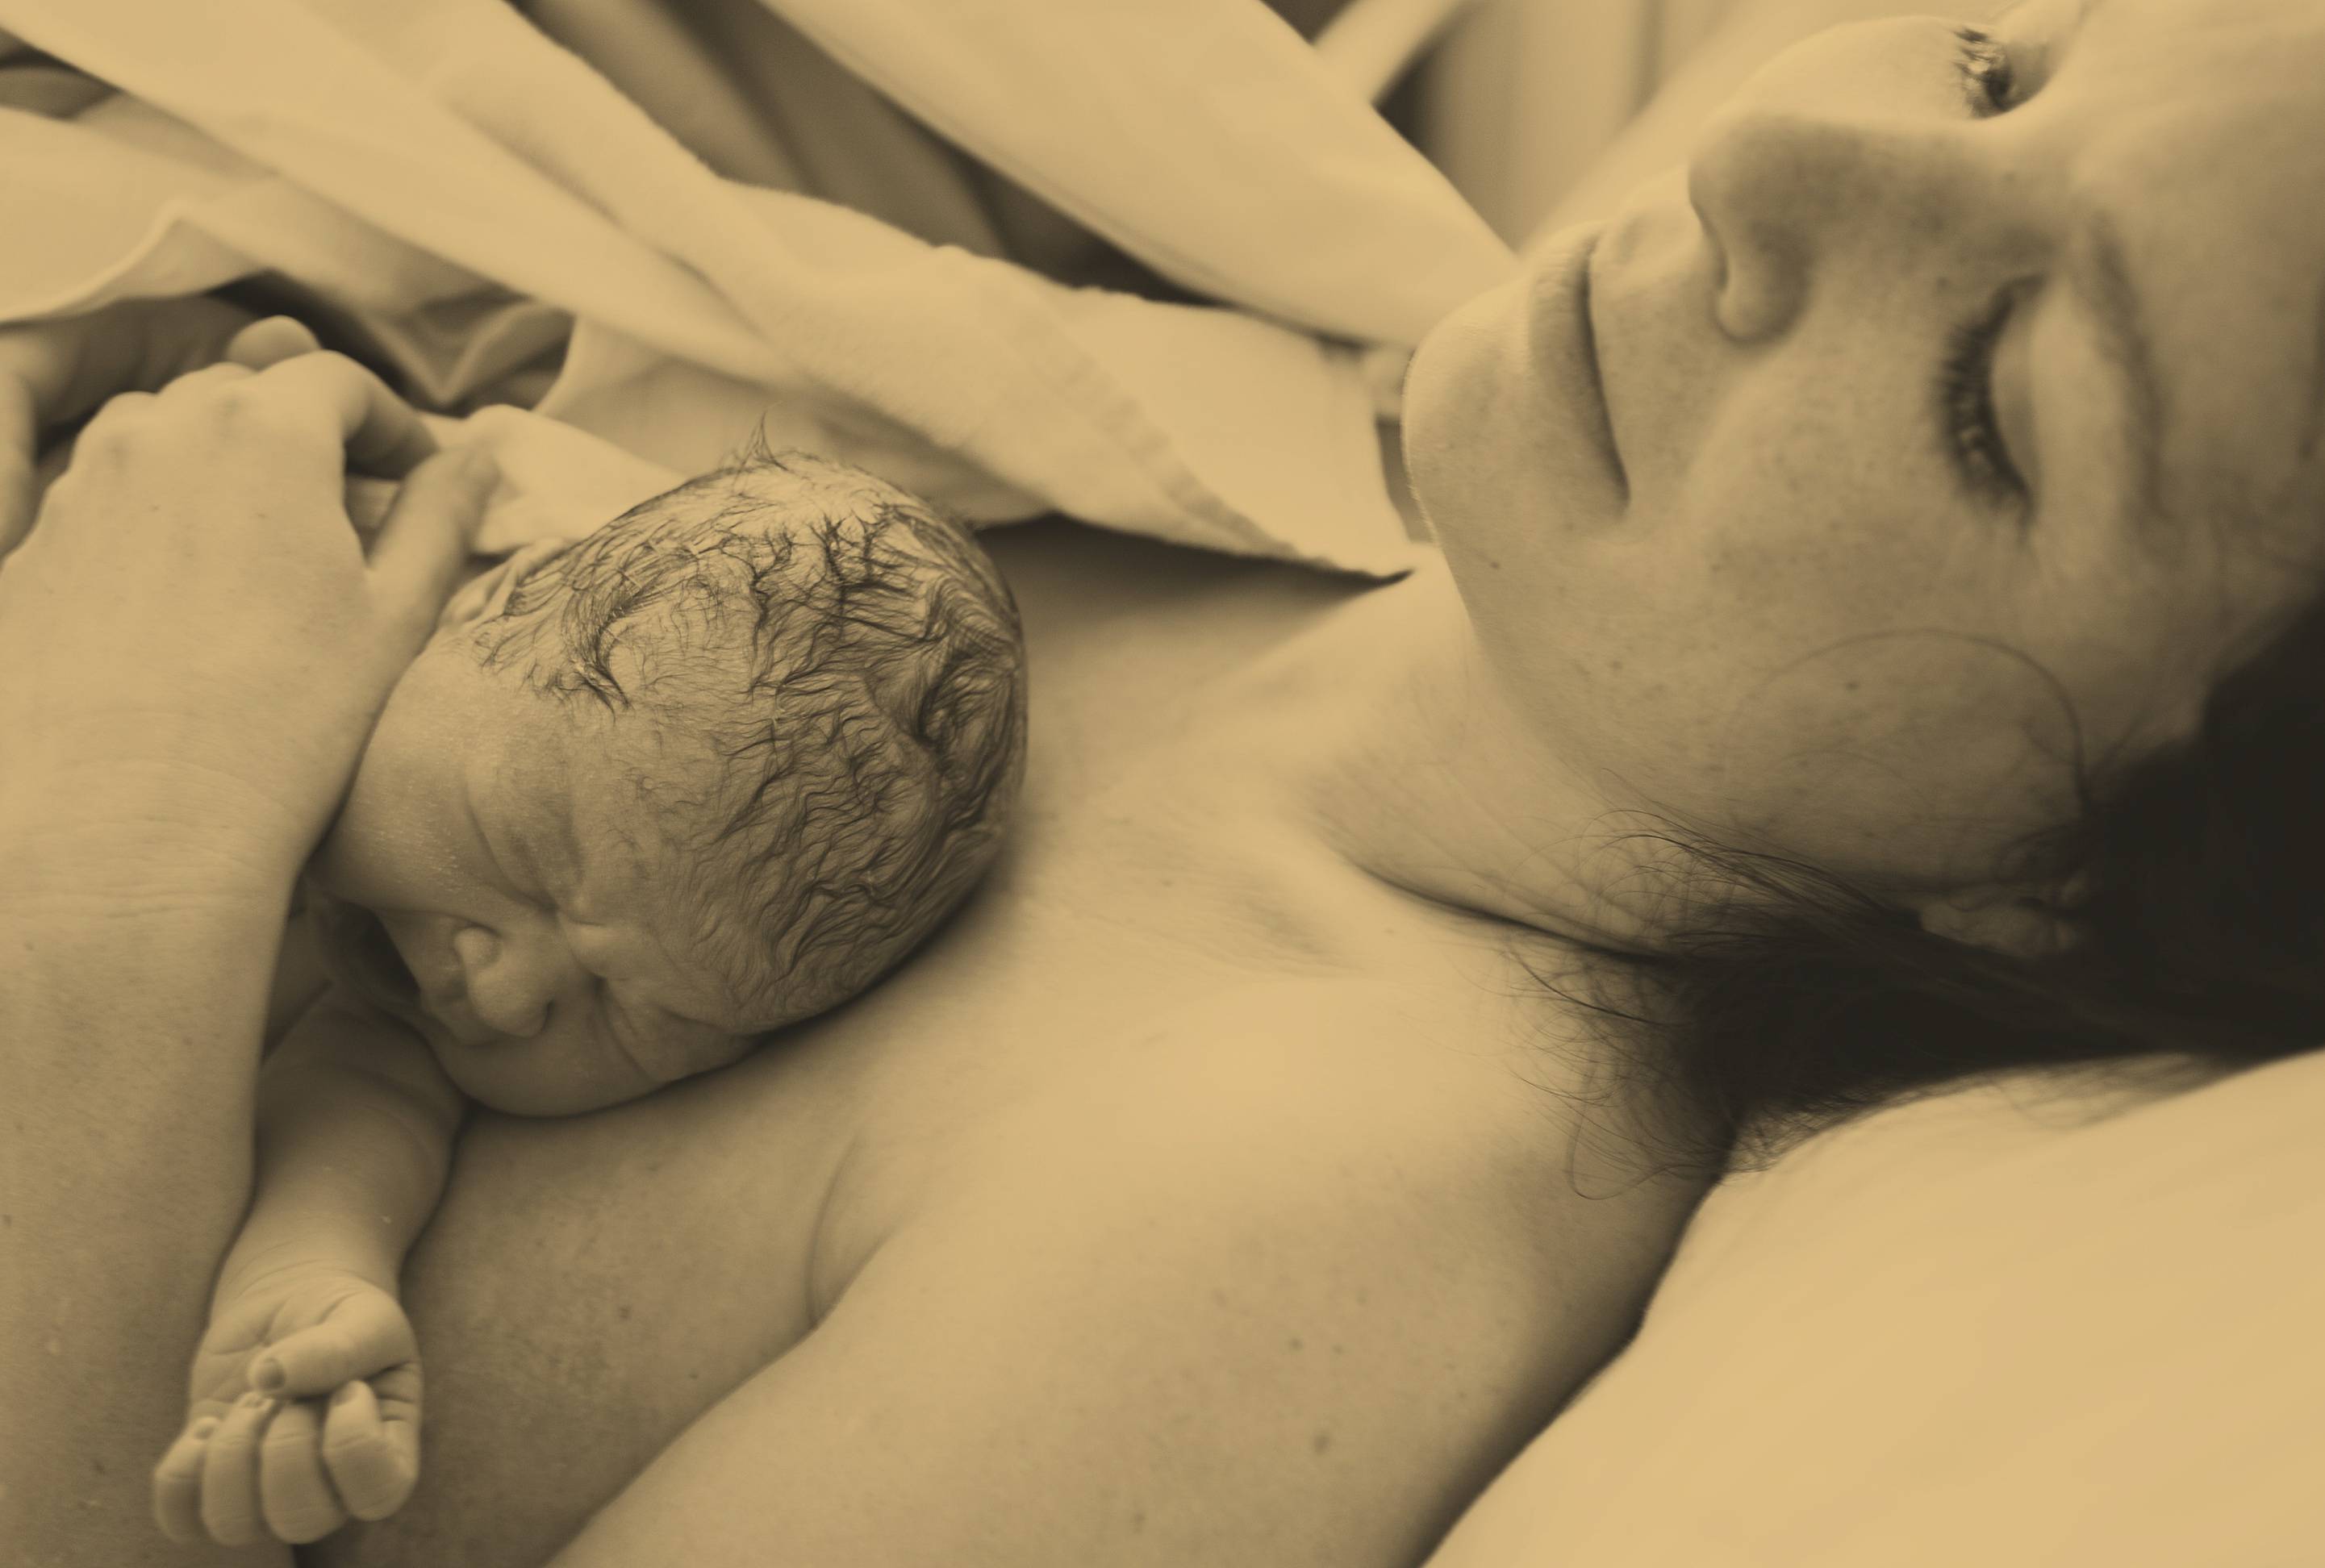 Mamma e figlio dopo parto naturale con assistenza doulà-